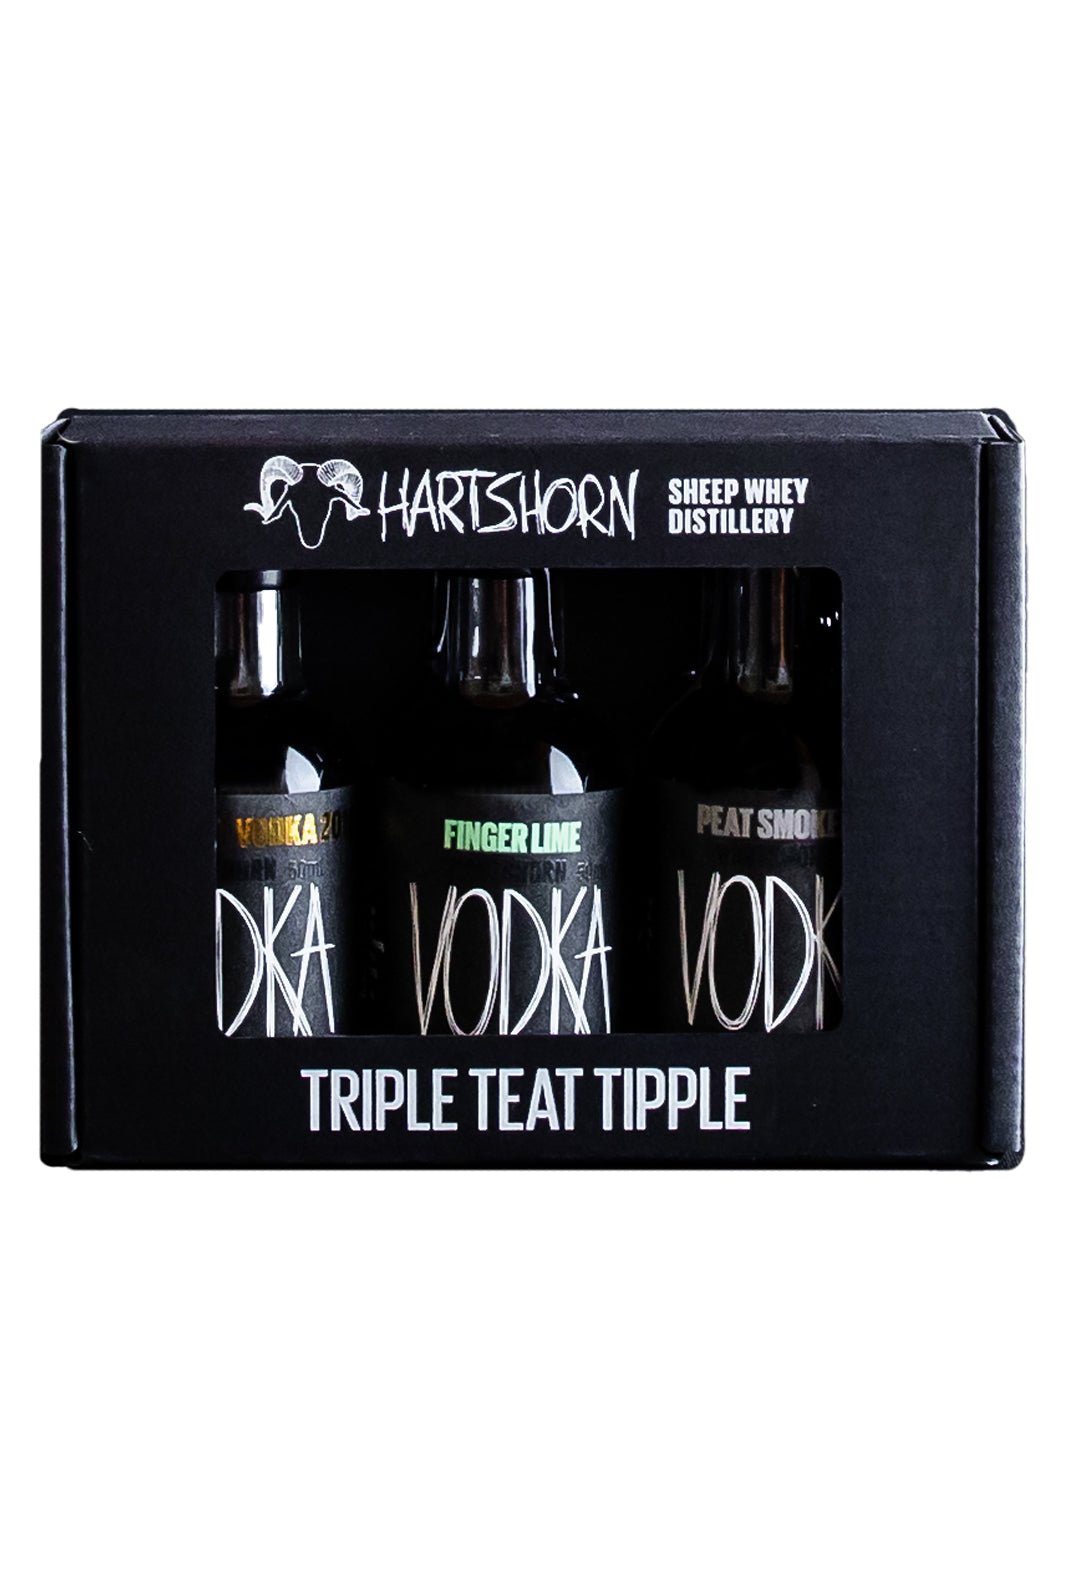 Hartshorn Trio Original, Finger Lime, Peated Vodka Gift Pack 3 x 50ml | Vodka | Shop online at Spirits of France